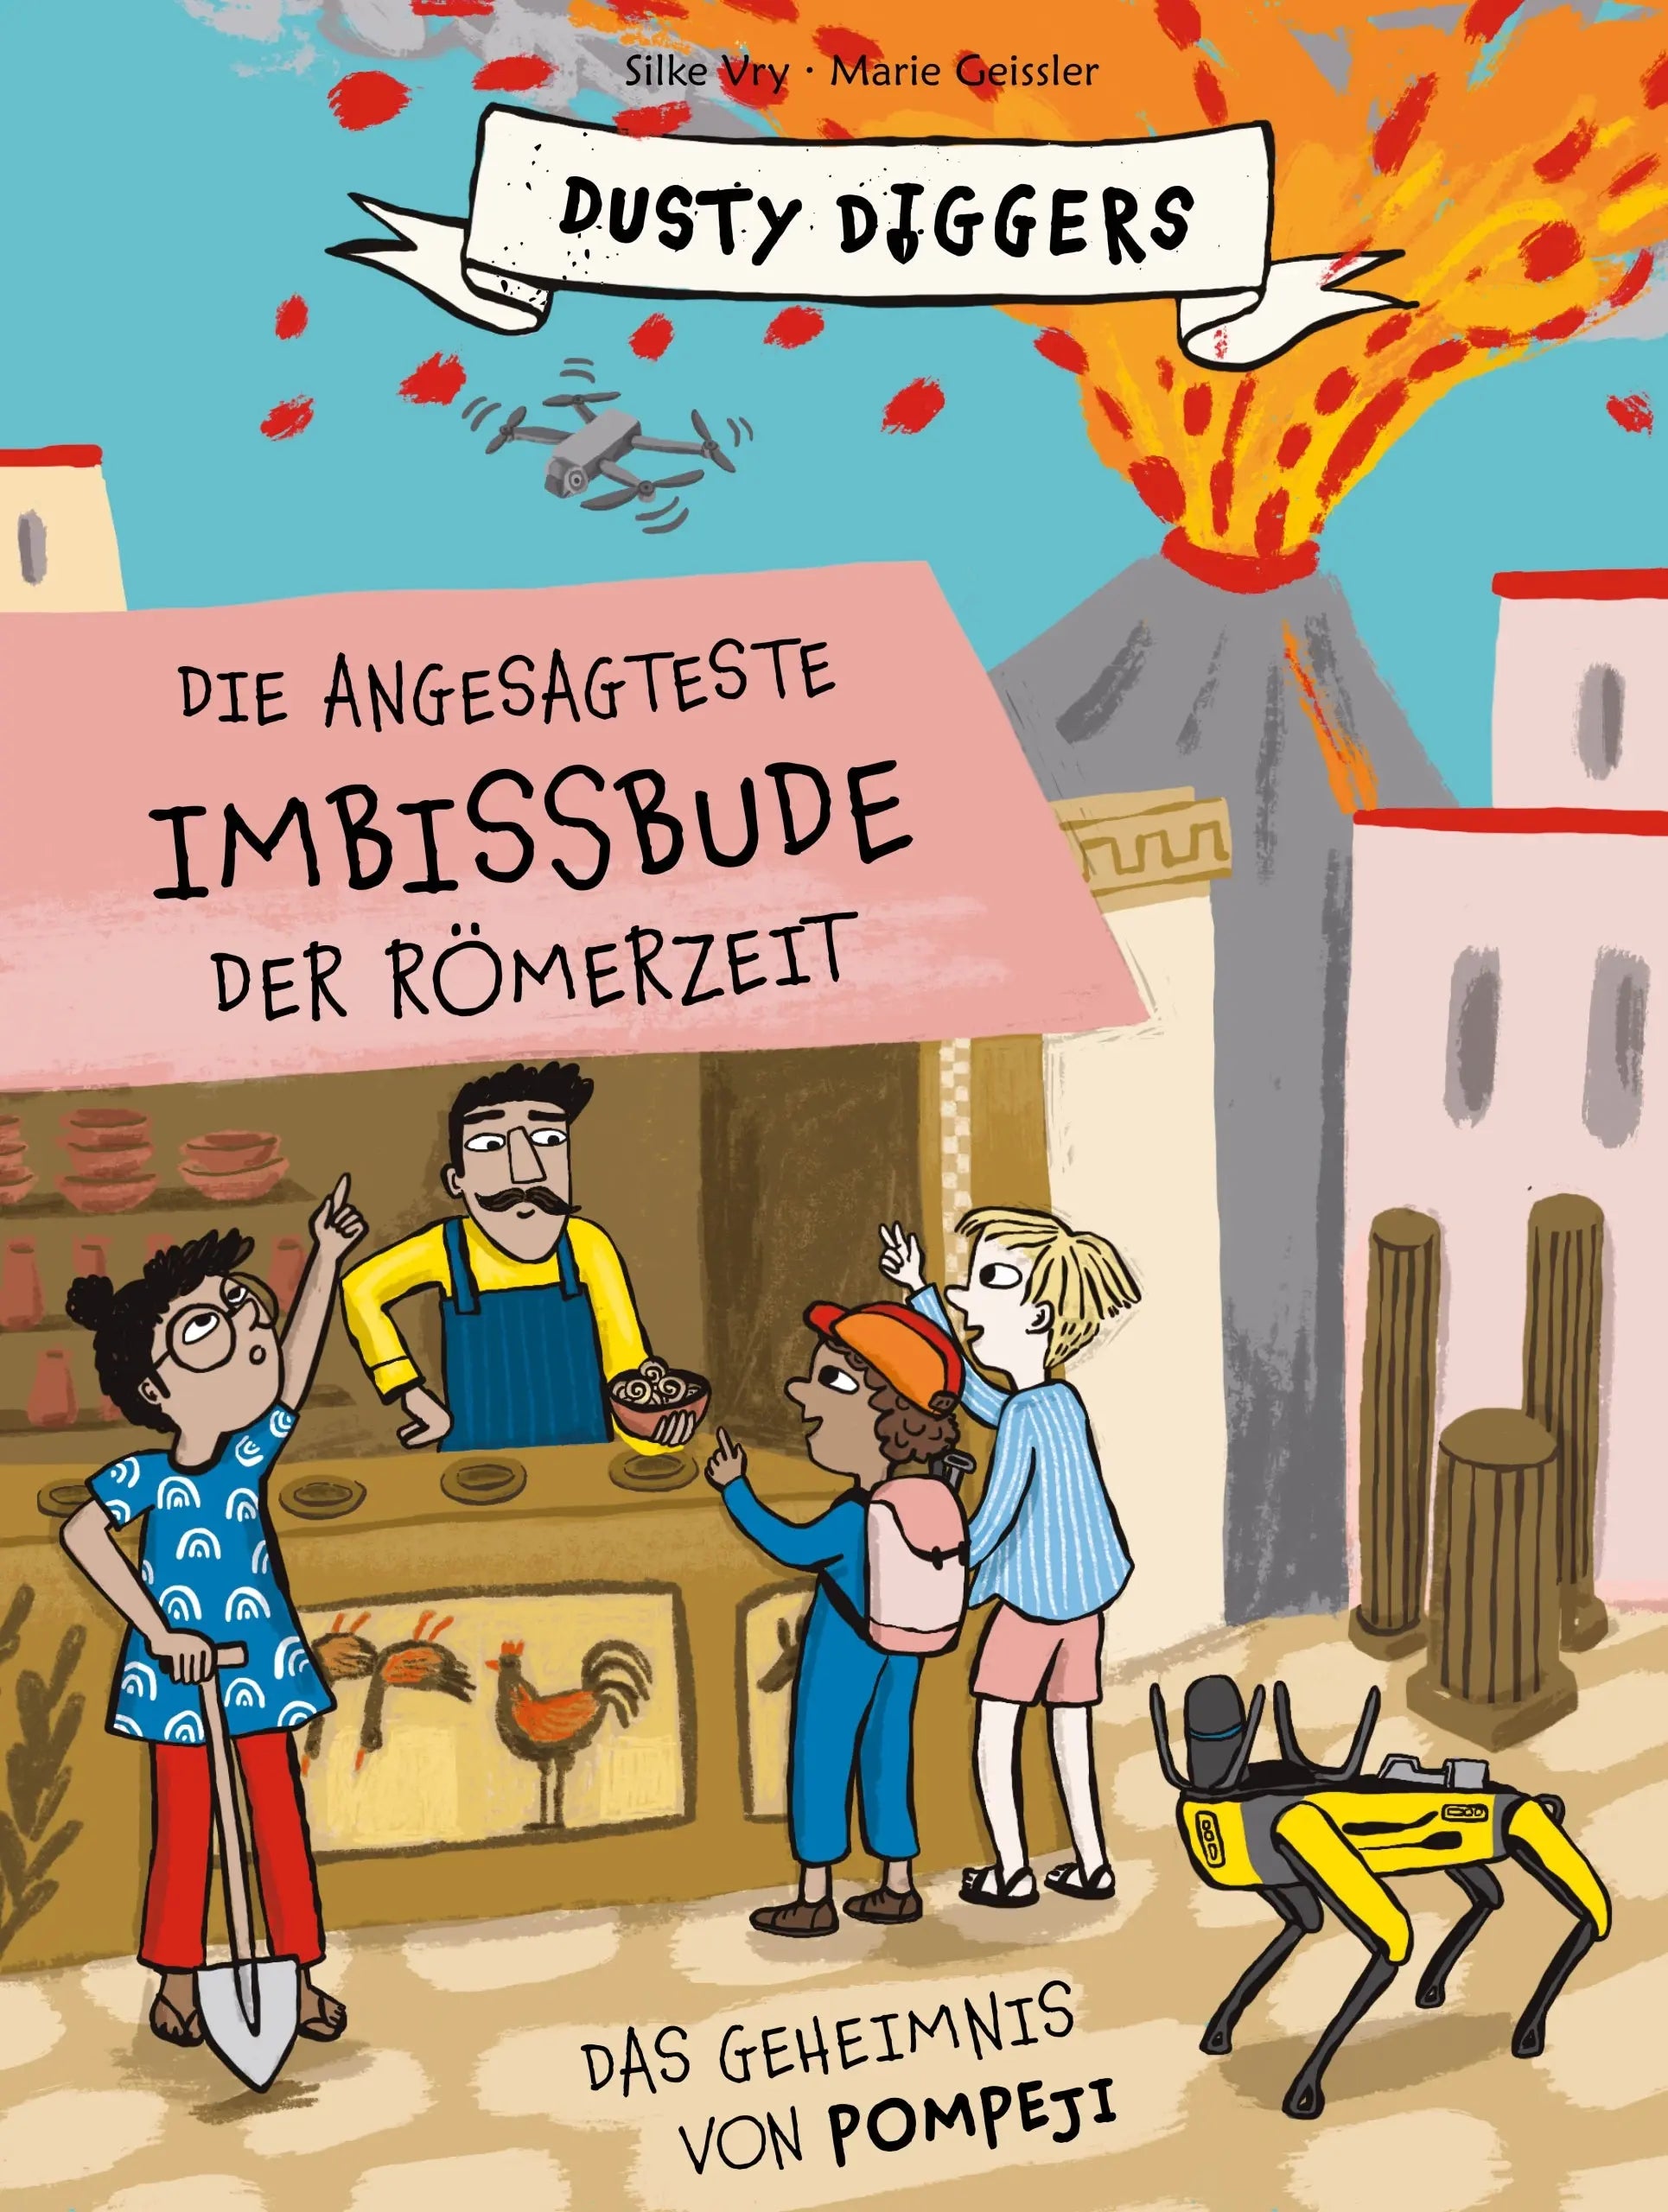 Die angesagtes Imbissbude der Römerzeit E.A. Seemann Verlag